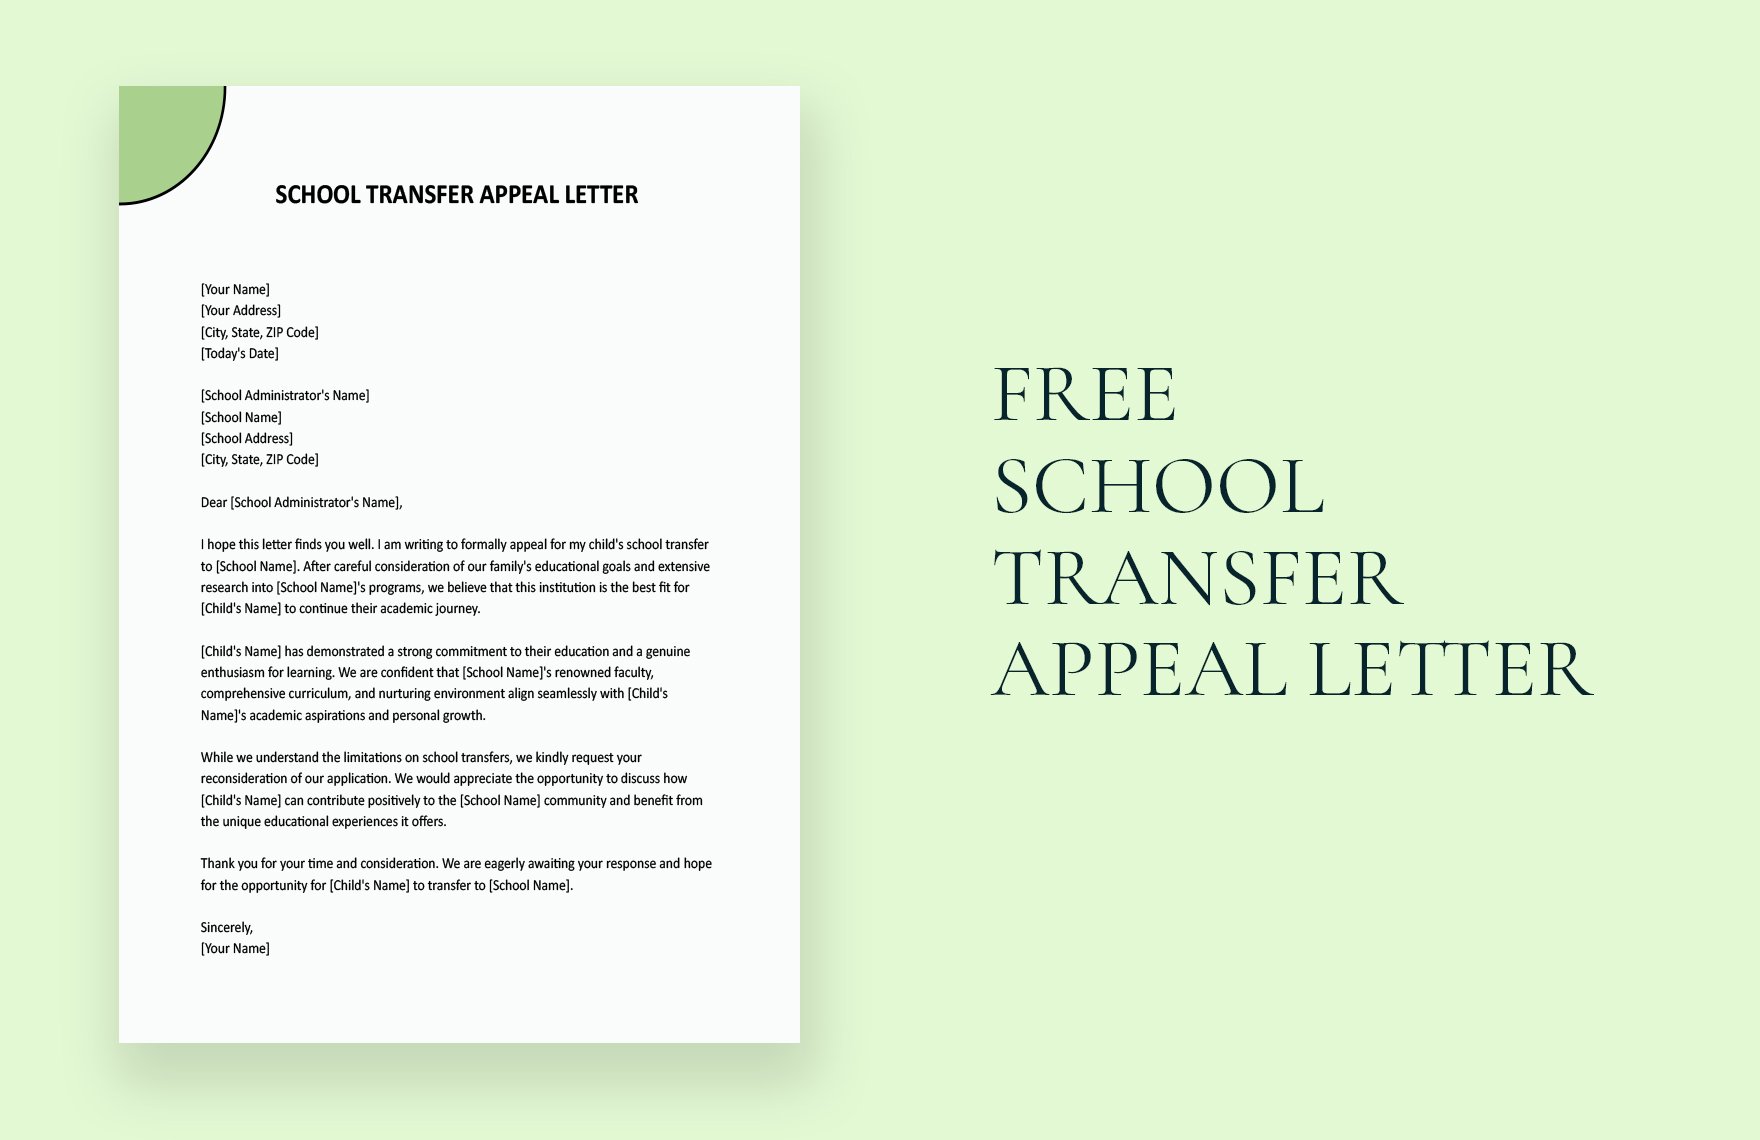 School Transfer Appeal Letter in Word, Google Docs